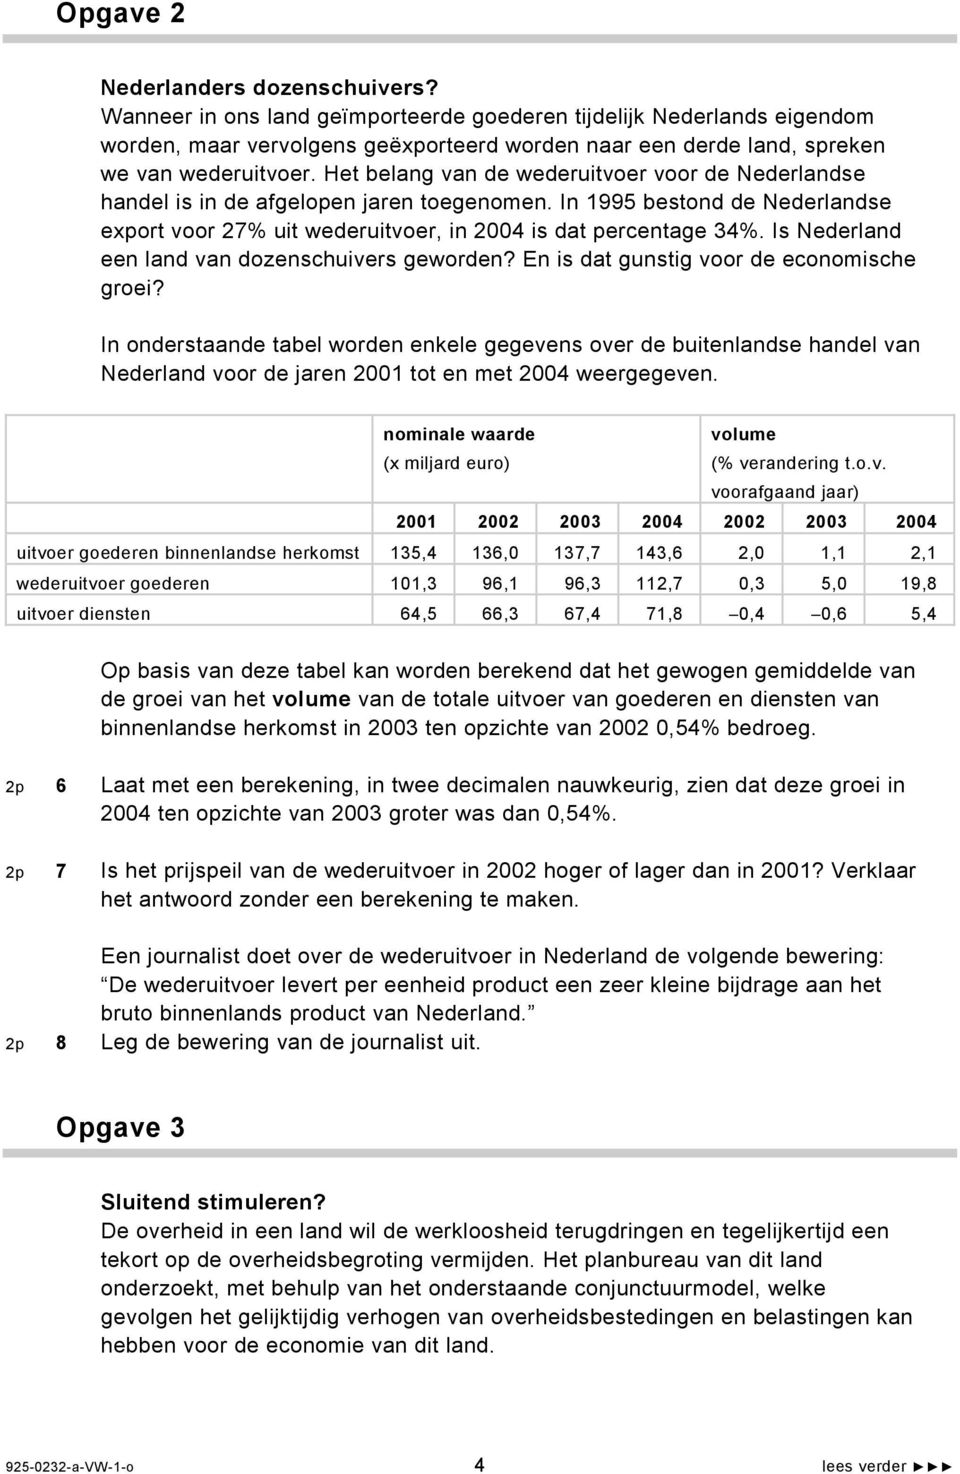 Het belang van de wederuitvoer voor de Nederlandse handel is in de afgelopen jaren toegenomen. In 1995 bestond de Nederlandse export voor 27% uit wederuitvoer, in 2004 is dat percentage 34%.